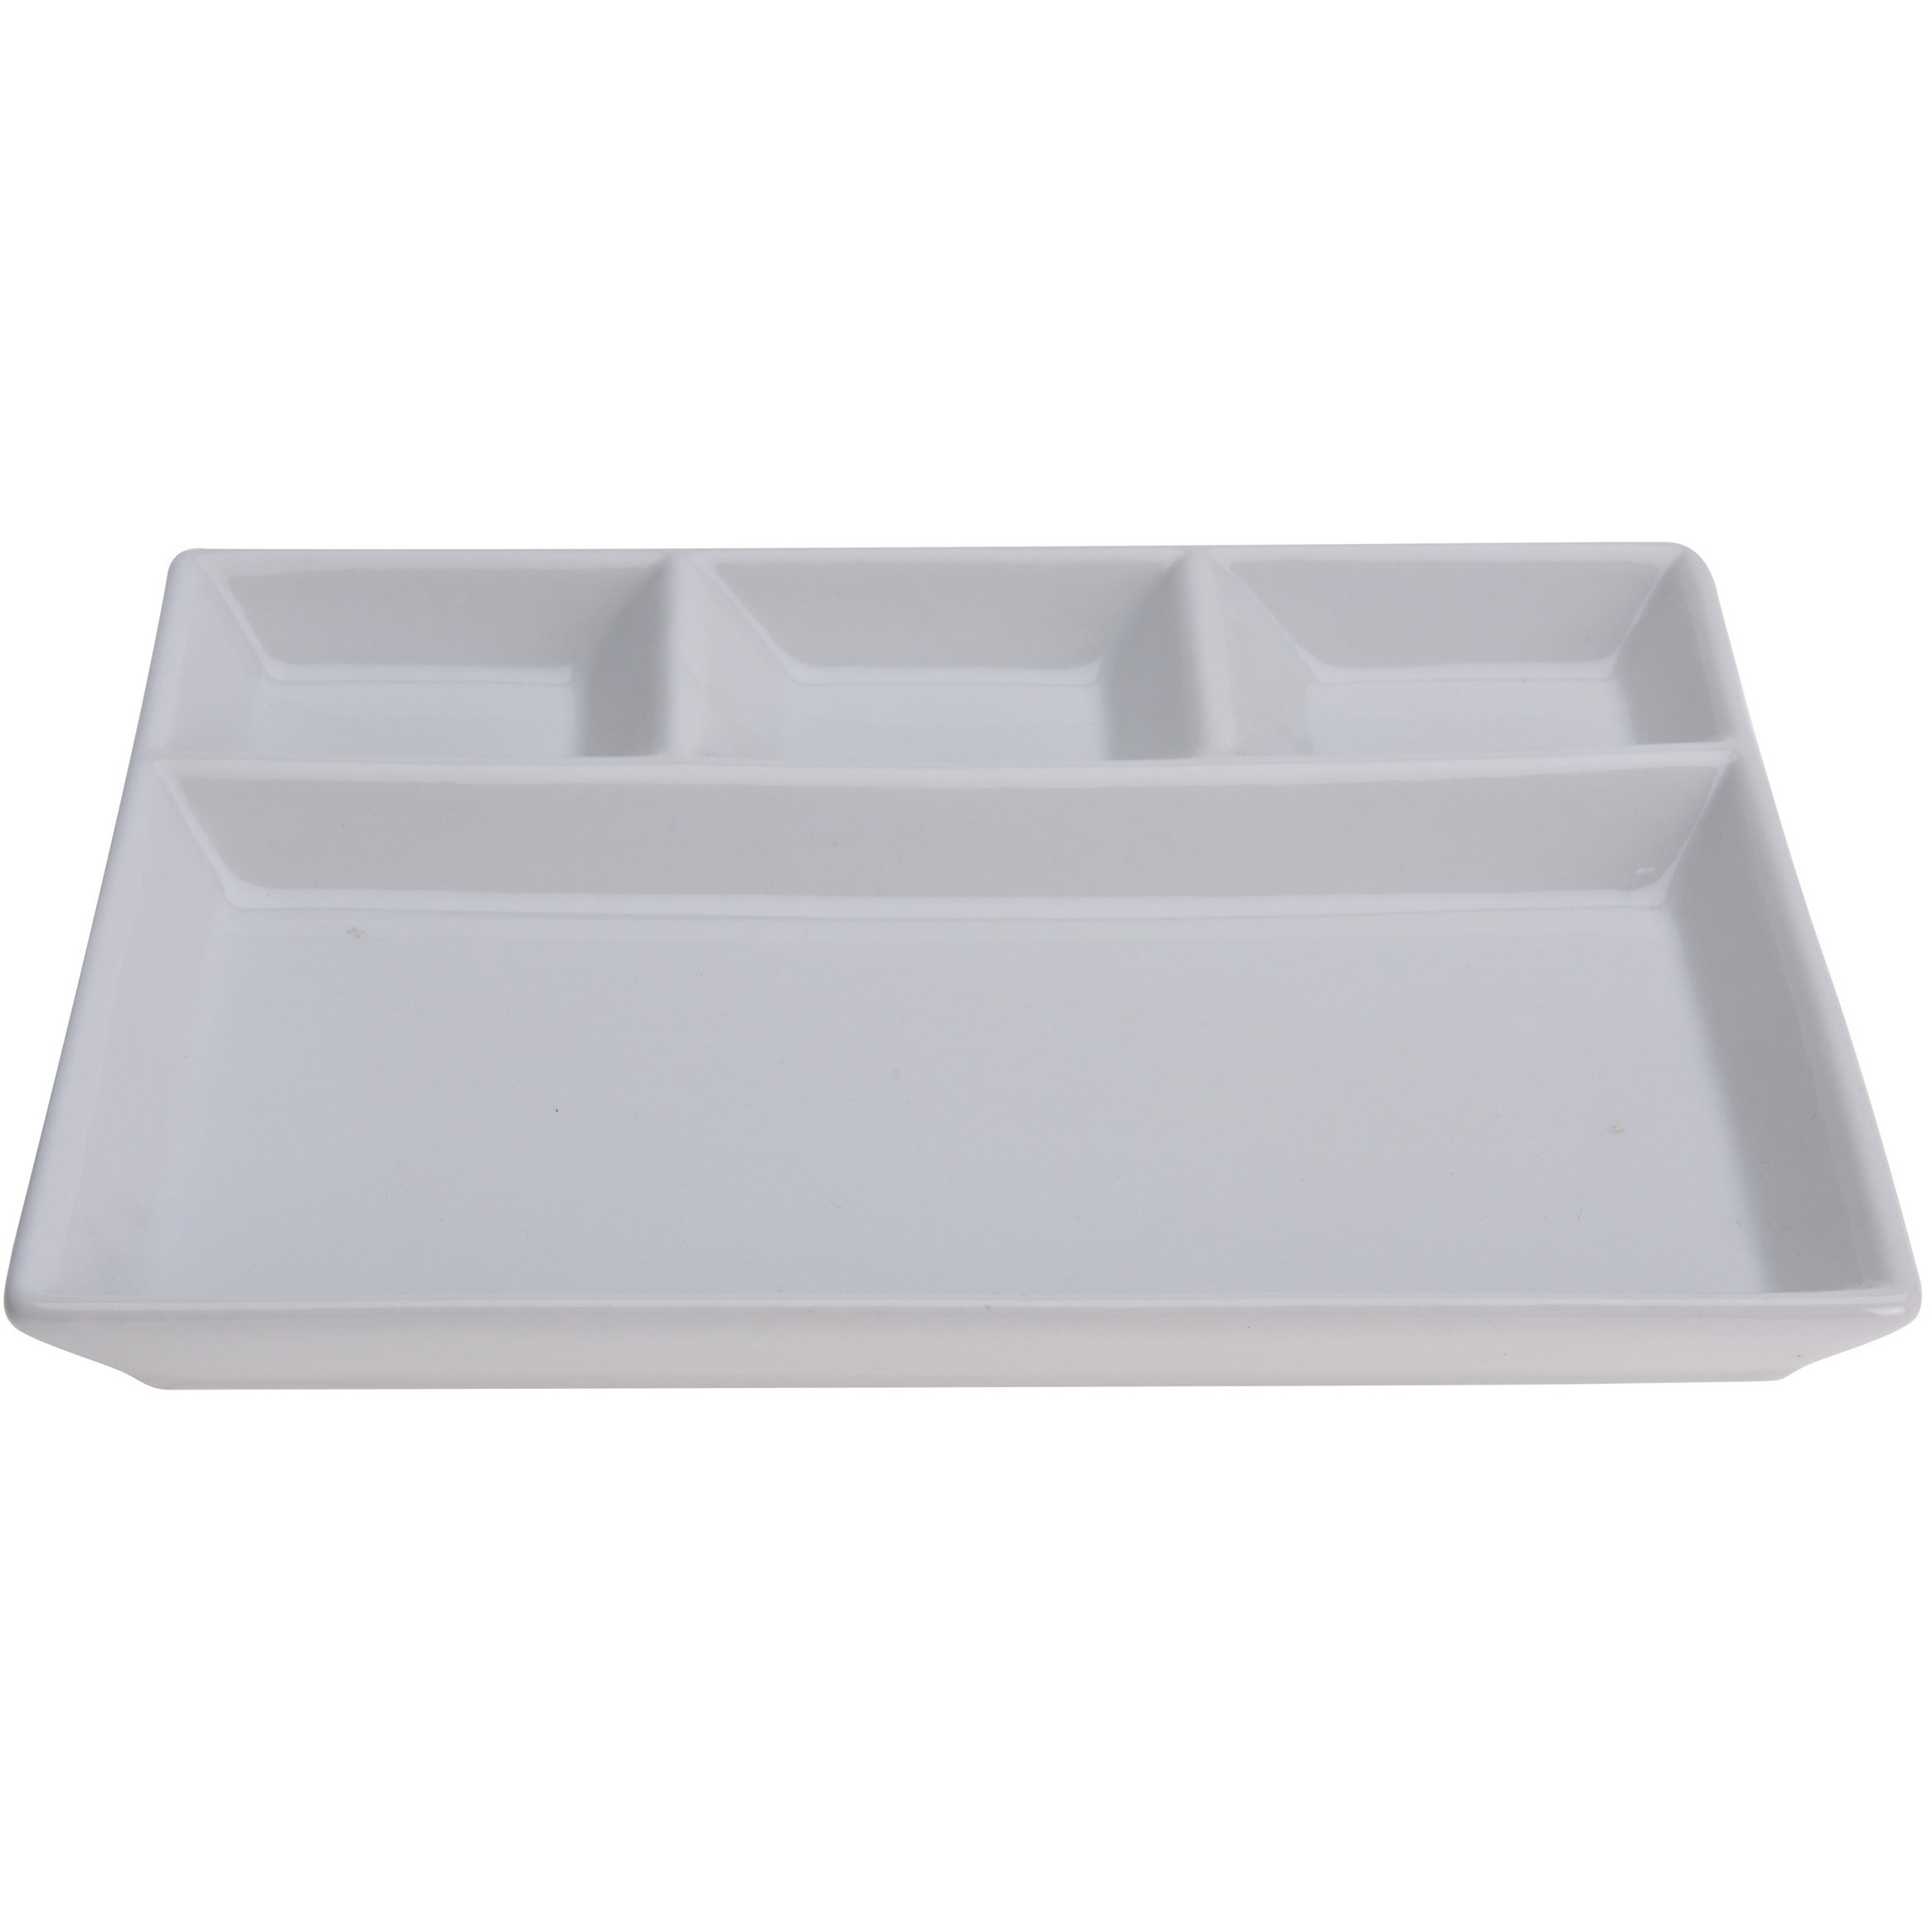 1x Witte borden-gourmetborden van porselein met 4 vakken 24 x 19 cm